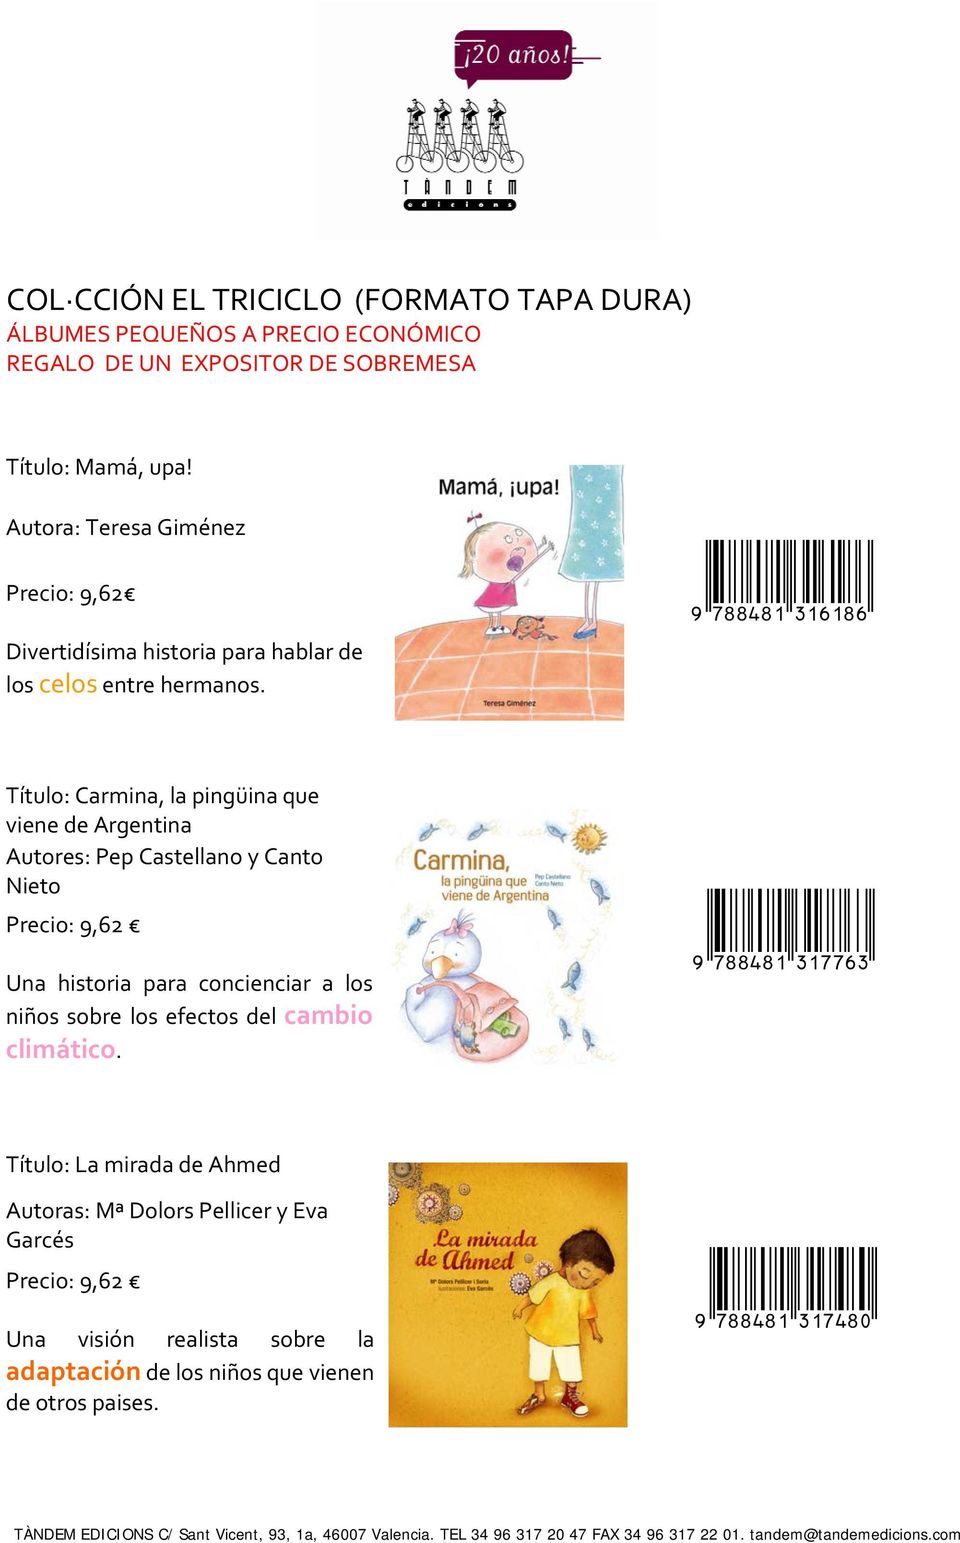 Título: Carmina, la pingüina que viene de Argentina Autores: Pep Castellano y Canto Nieto Precio: 9,62 Una historia para concienciar a los niños sobre los